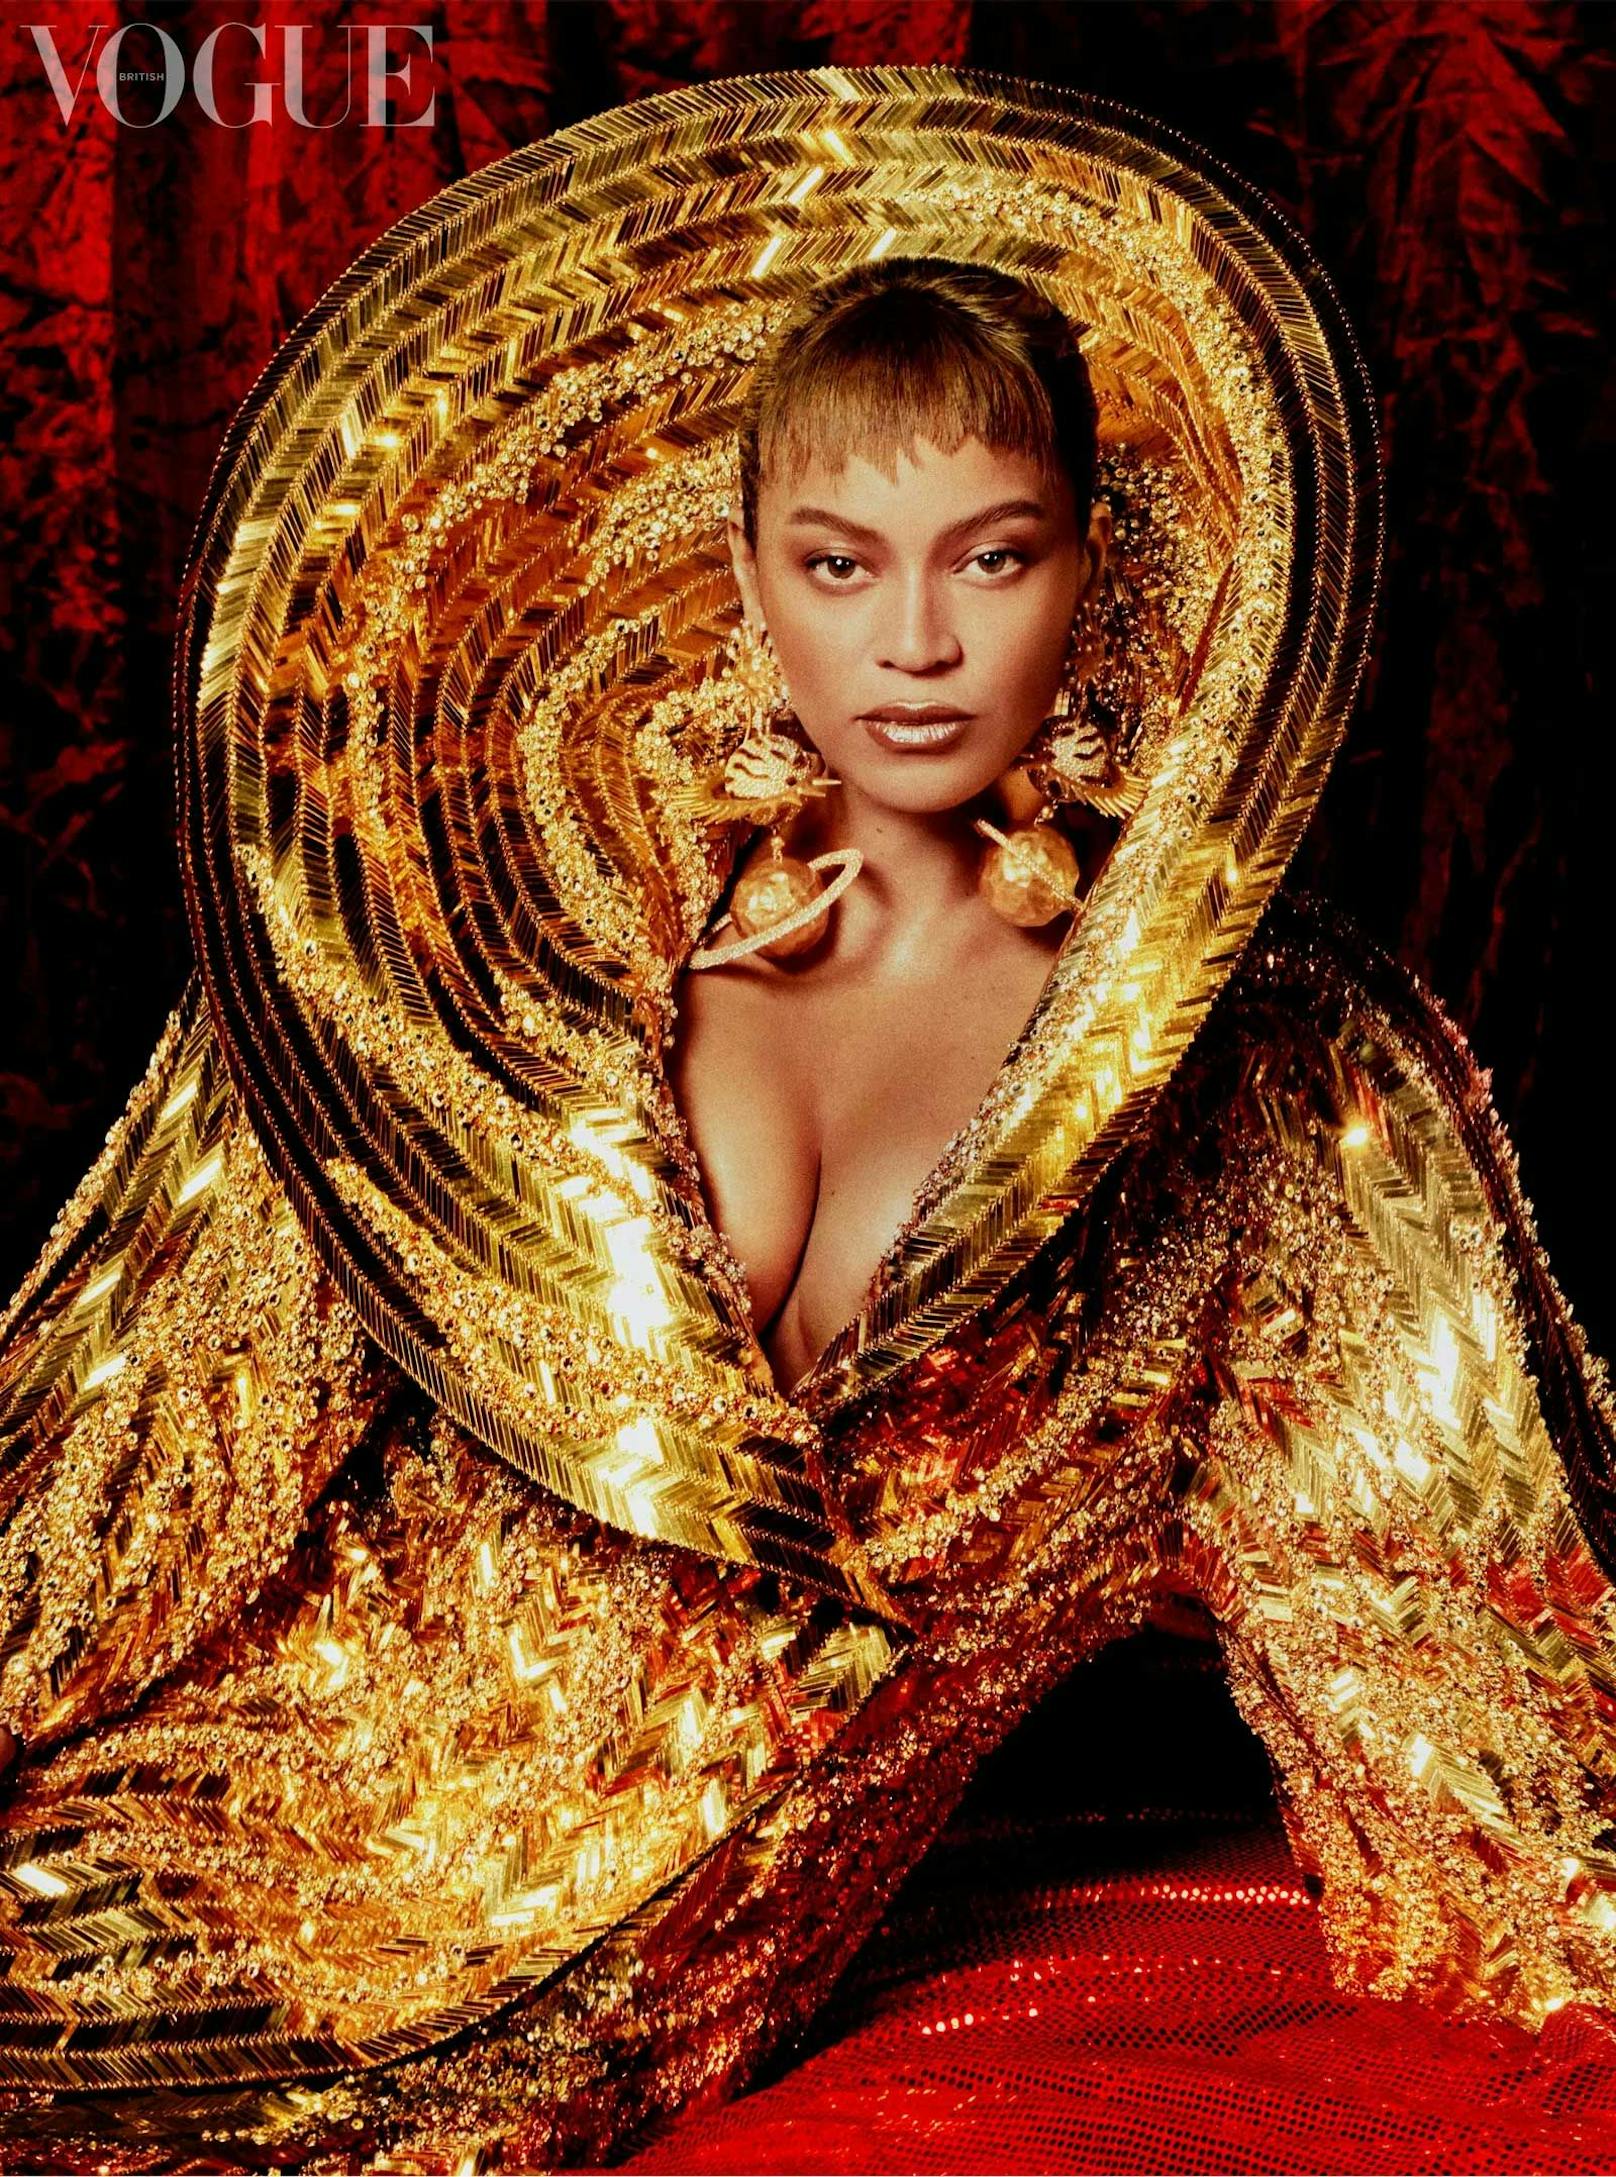 Beyonce strahlt mehr denn je. Die Queen des Pop meldet sich bald mit neuem Album zurück. Erstmal gibt es "nur" Fotos und ein Interview in der britischen "Vogue".